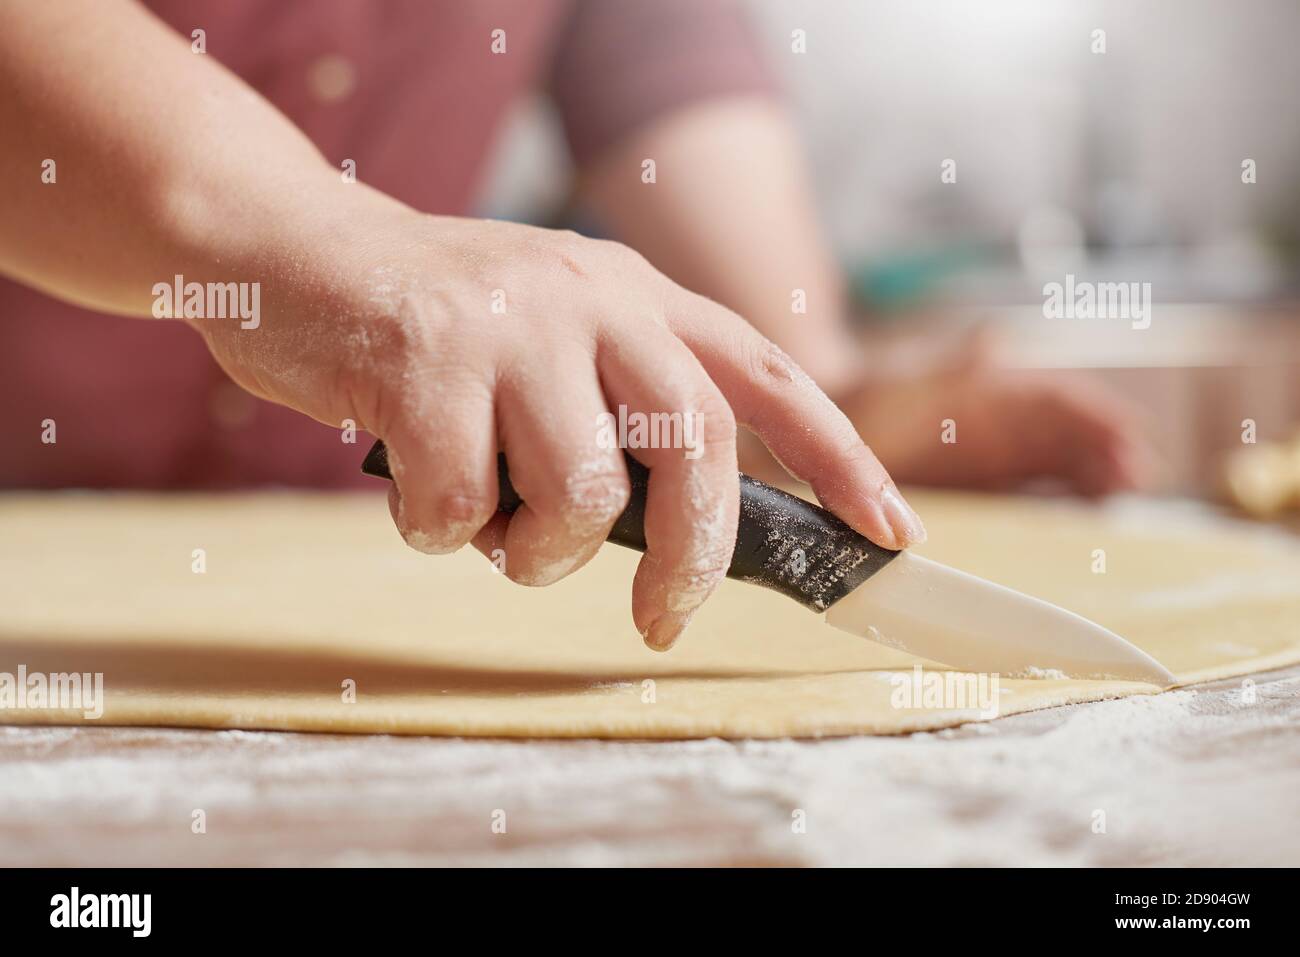 Gros plan des mains de femmes coupant la pâte crue avec un couteau Banque D'Images